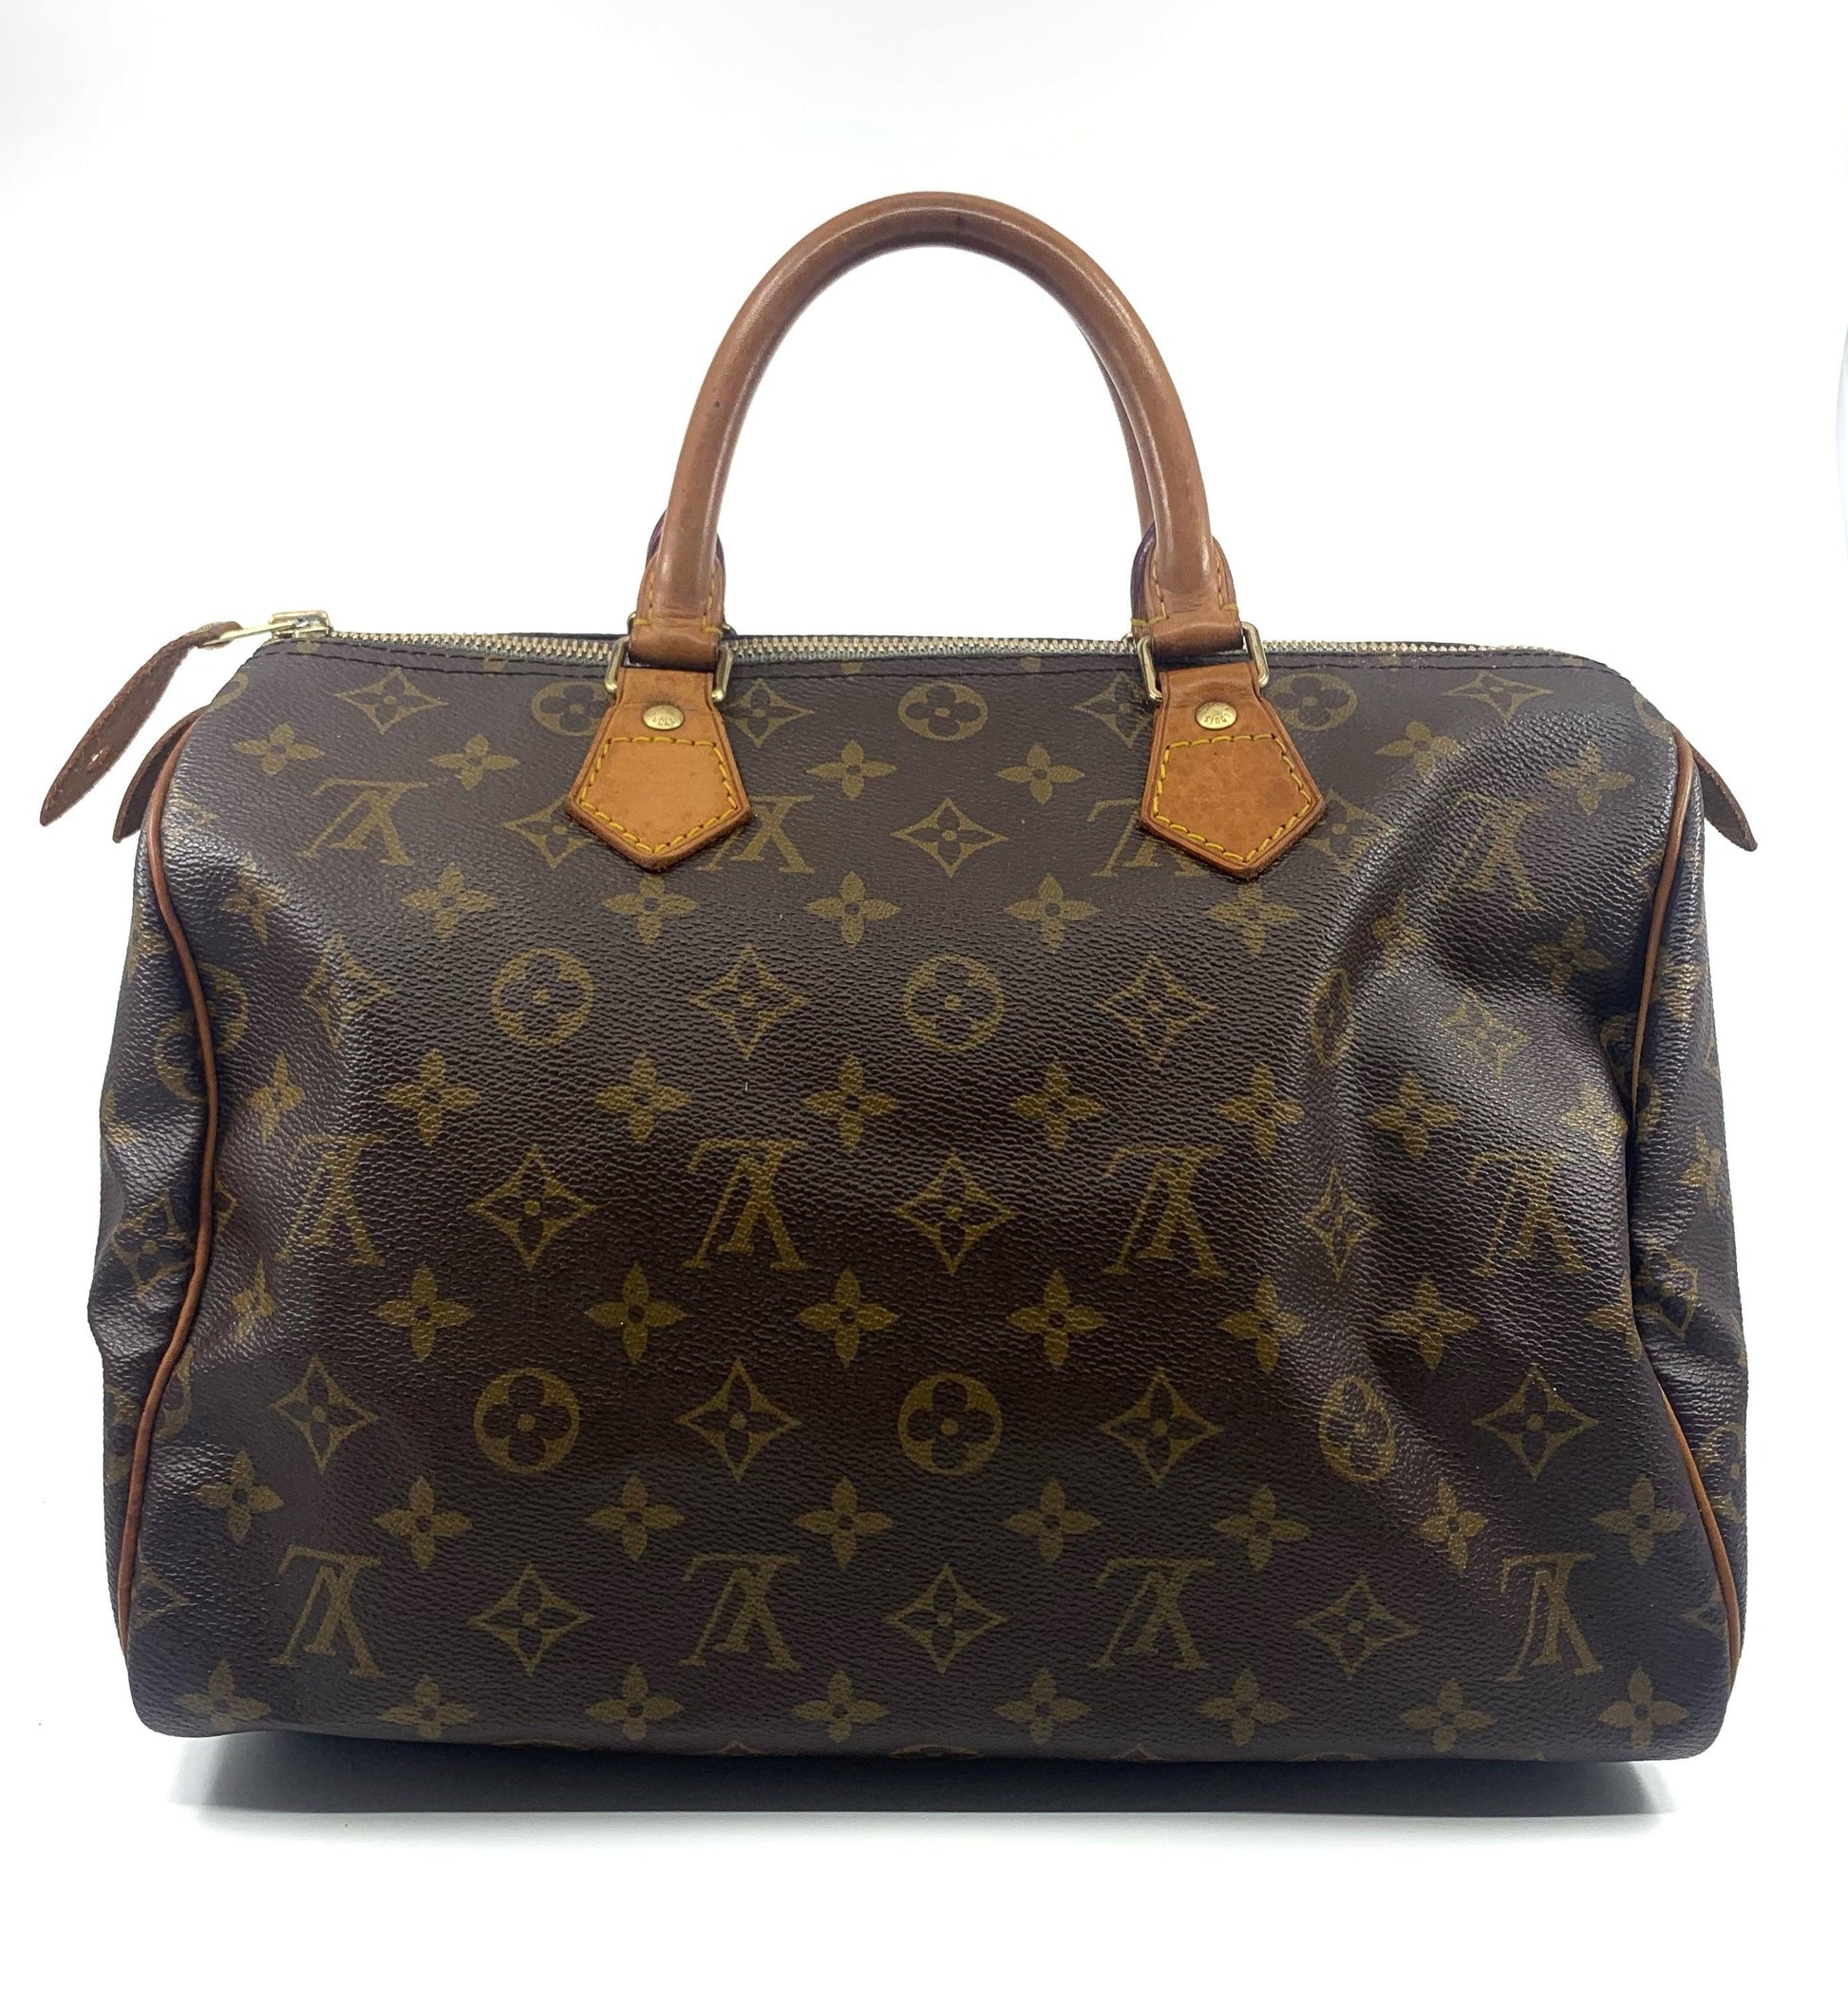 Louis Vuitton Monogram Speedy 30 - THE BAG | COLLECTIVE